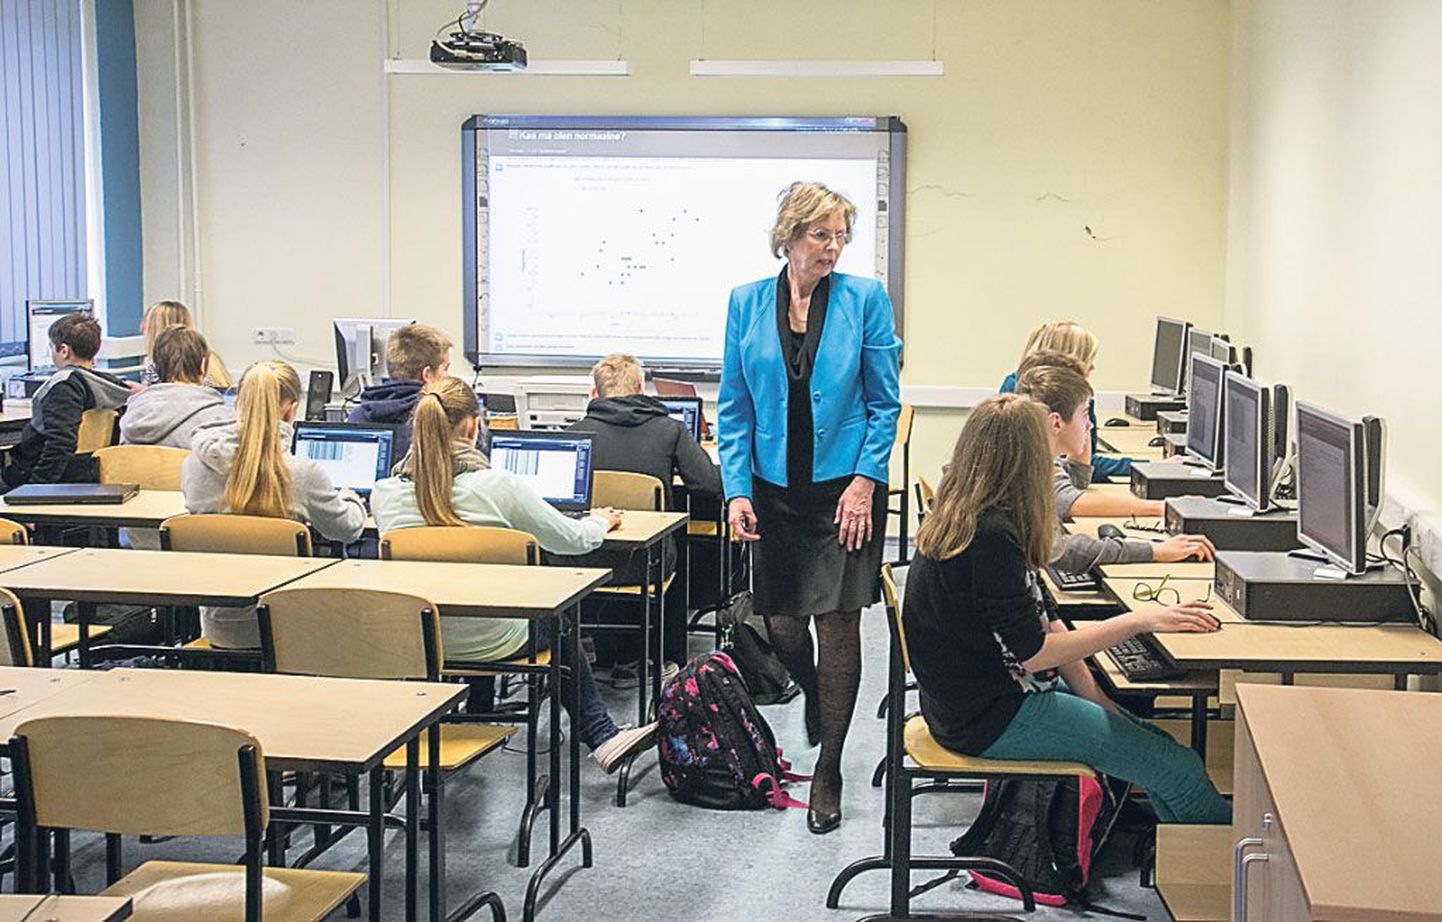 Pärnumaalt on Raeküla kool ainus, mis statistikaõppe pilootprojektis osaleb.